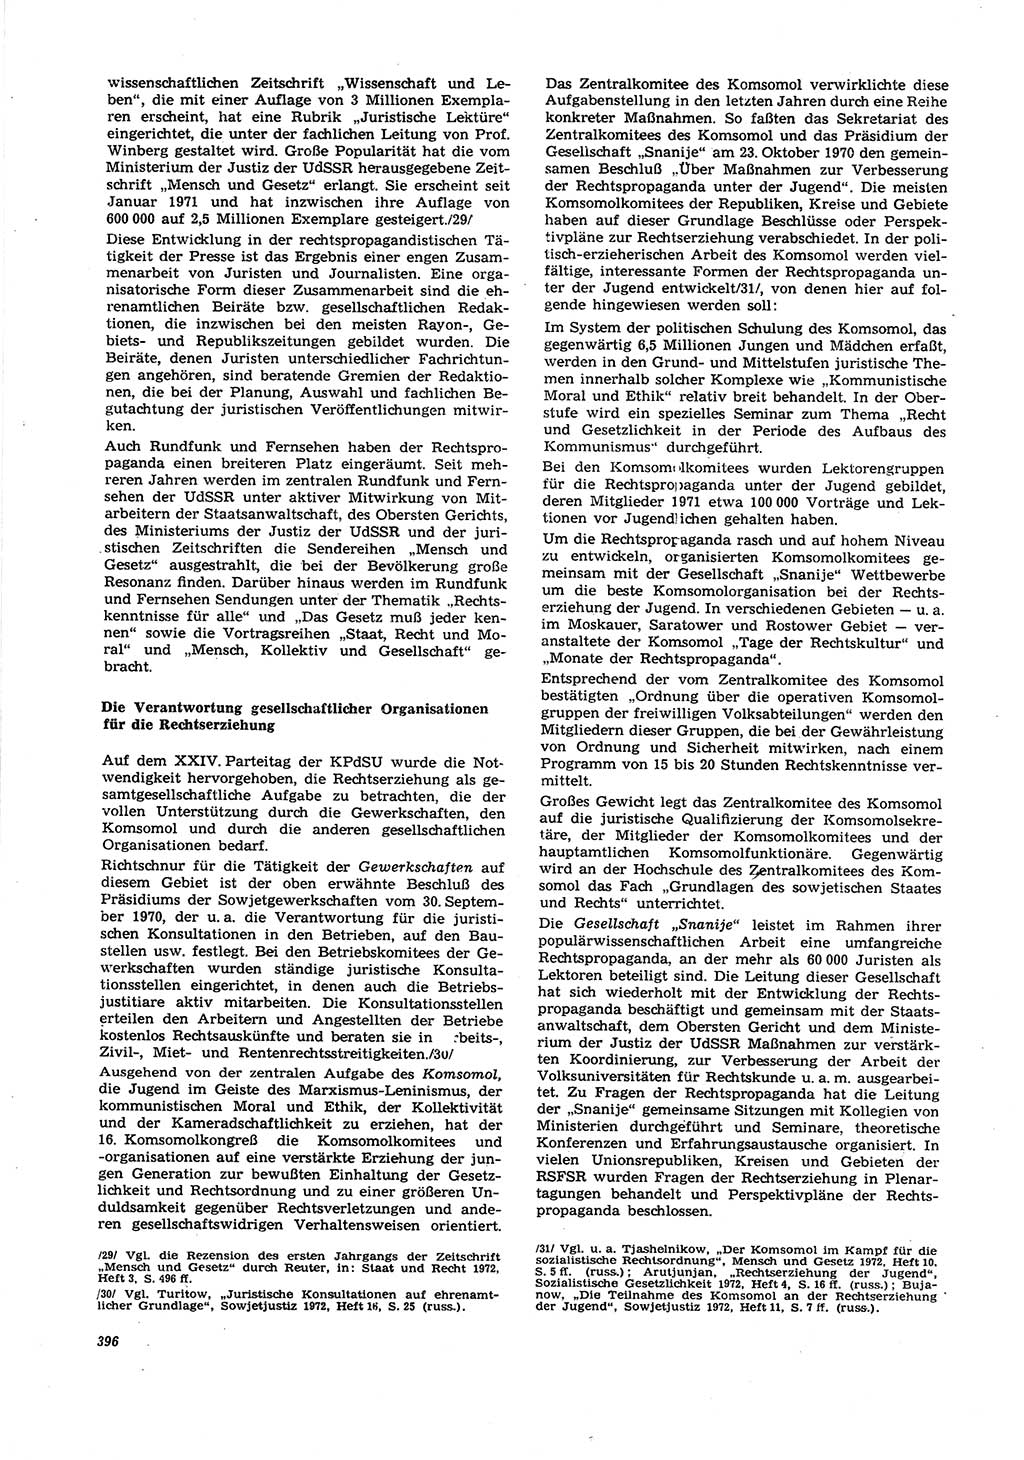 Neue Justiz (NJ), Zeitschrift für Recht und Rechtswissenschaft [Deutsche Demokratische Republik (DDR)], 27. Jahrgang 1973, Seite 396 (NJ DDR 1973, S. 396)